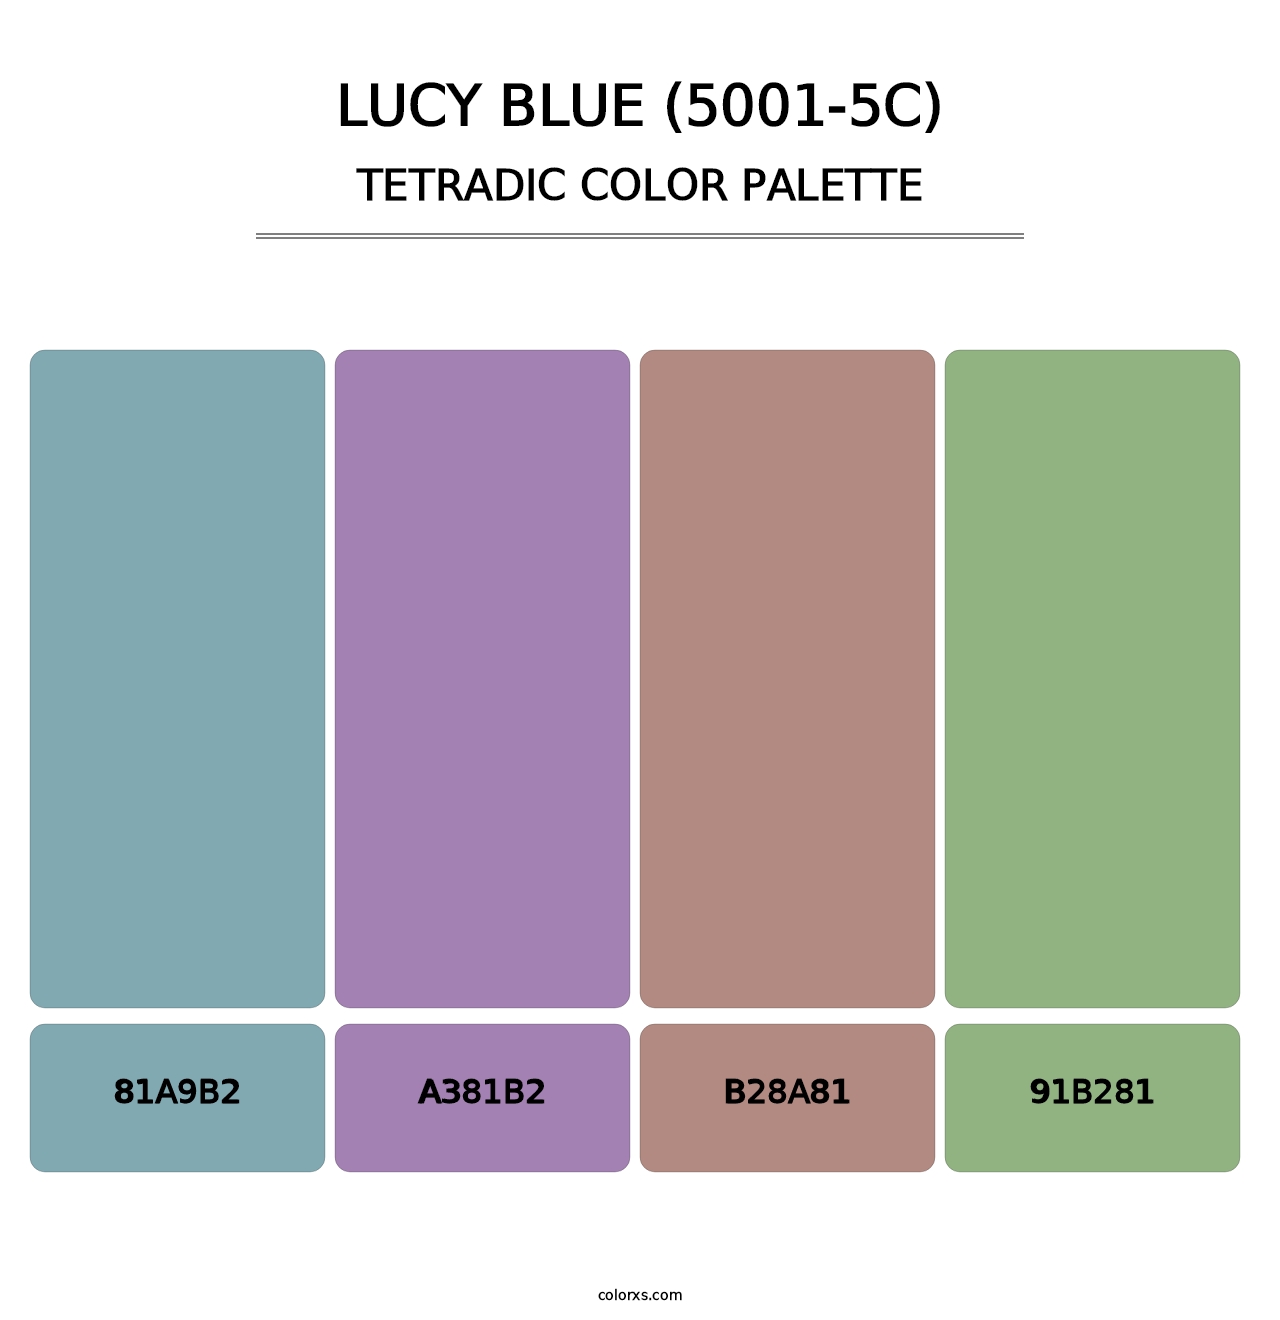 Lucy Blue (5001-5C) - Tetradic Color Palette